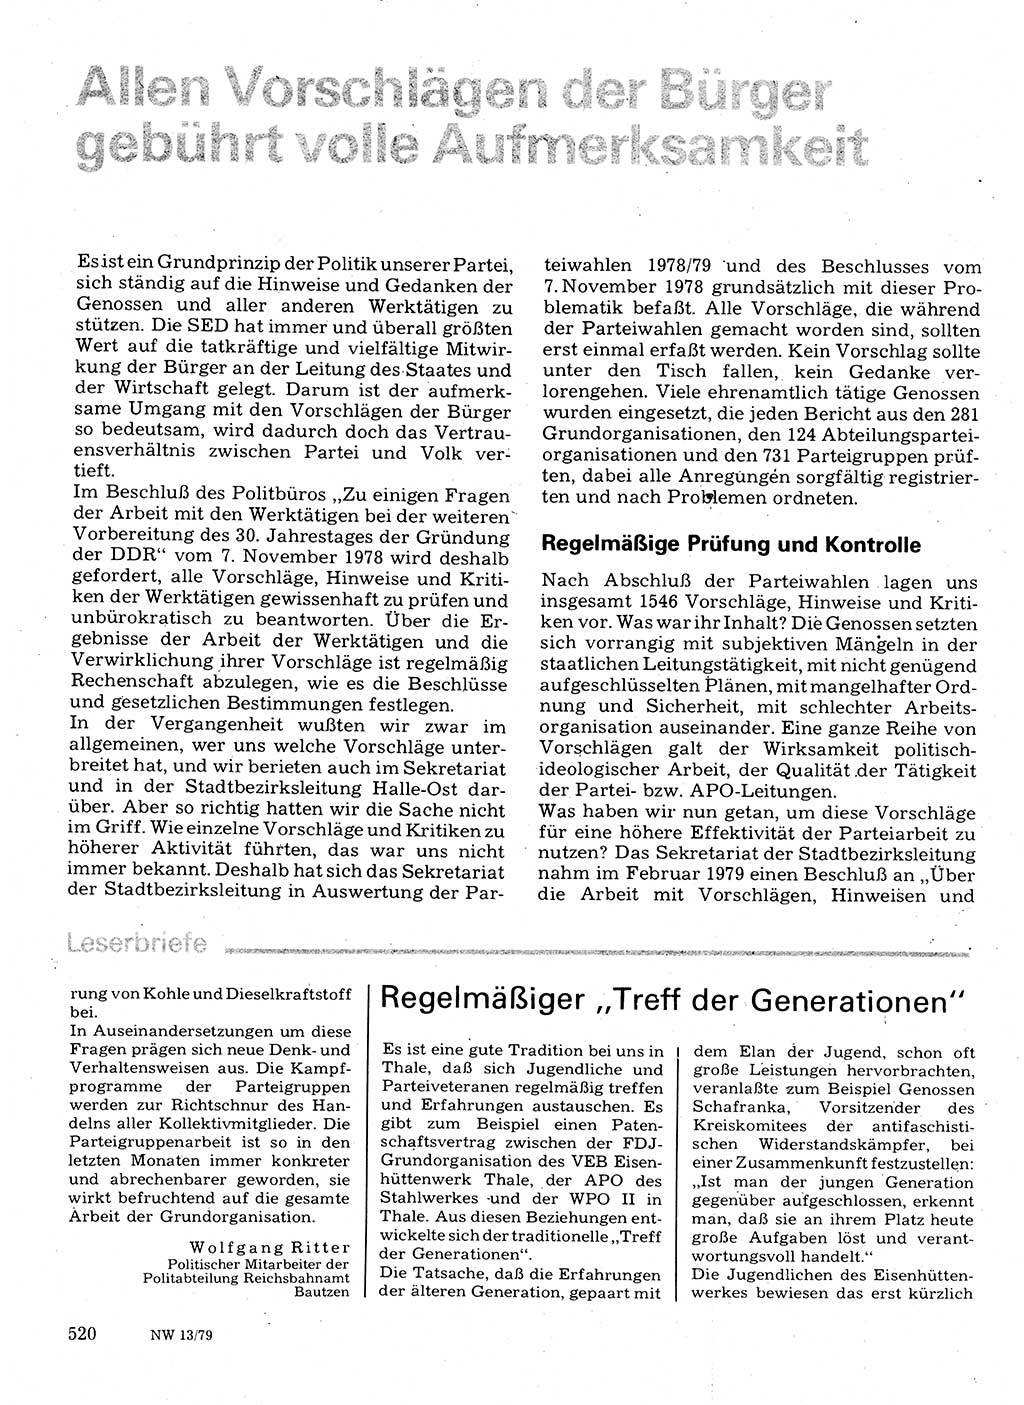 Neuer Weg (NW), Organ des Zentralkomitees (ZK) der SED (Sozialistische Einheitspartei Deutschlands) für Fragen des Parteilebens, 34. Jahrgang [Deutsche Demokratische Republik (DDR)] 1979, Seite 520 (NW ZK SED DDR 1979, S. 520)